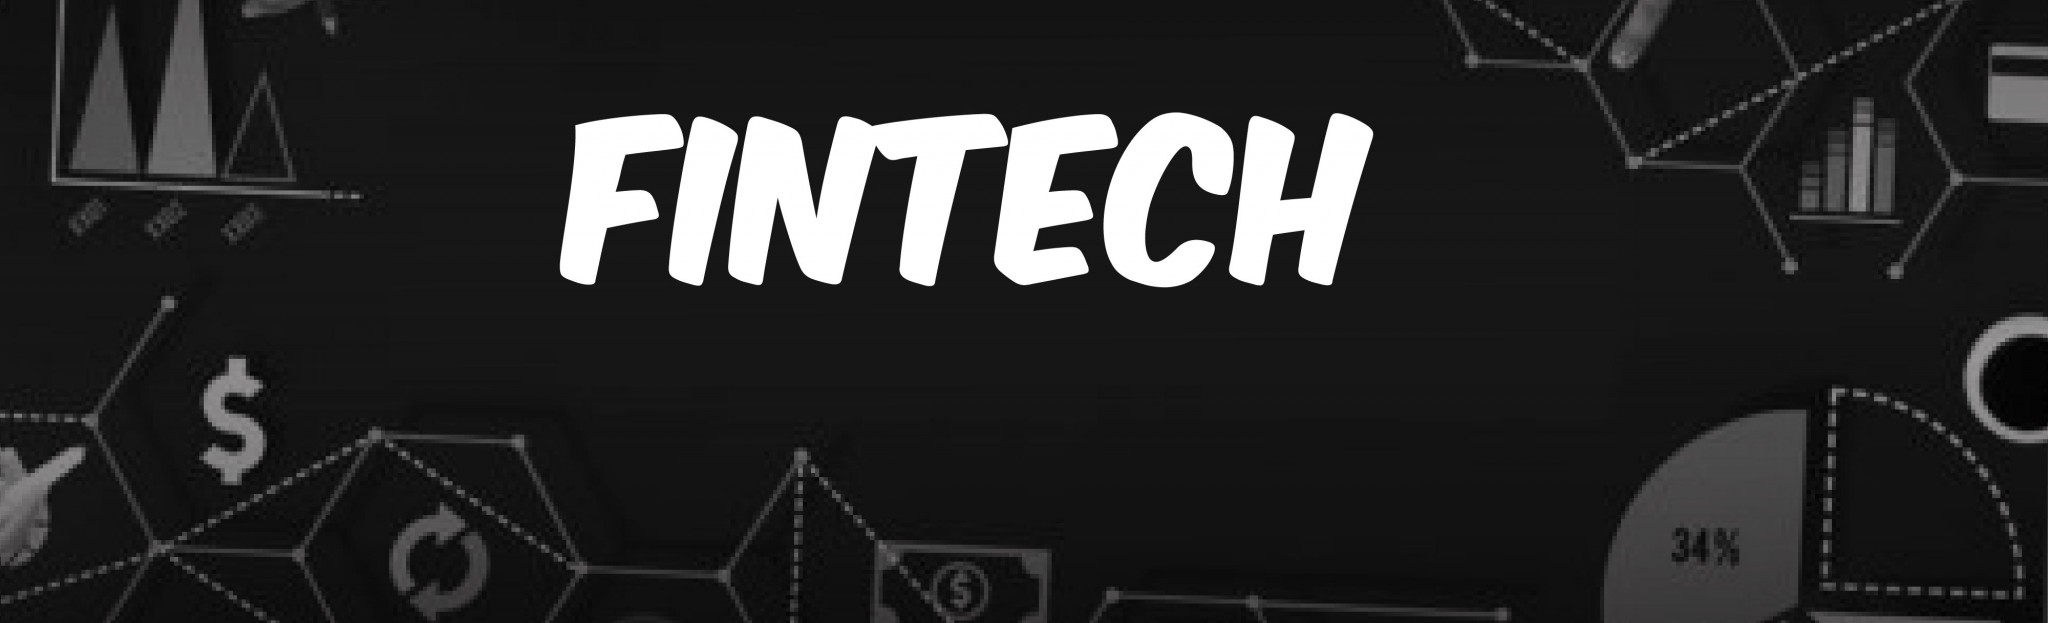 fintech startup recruitment